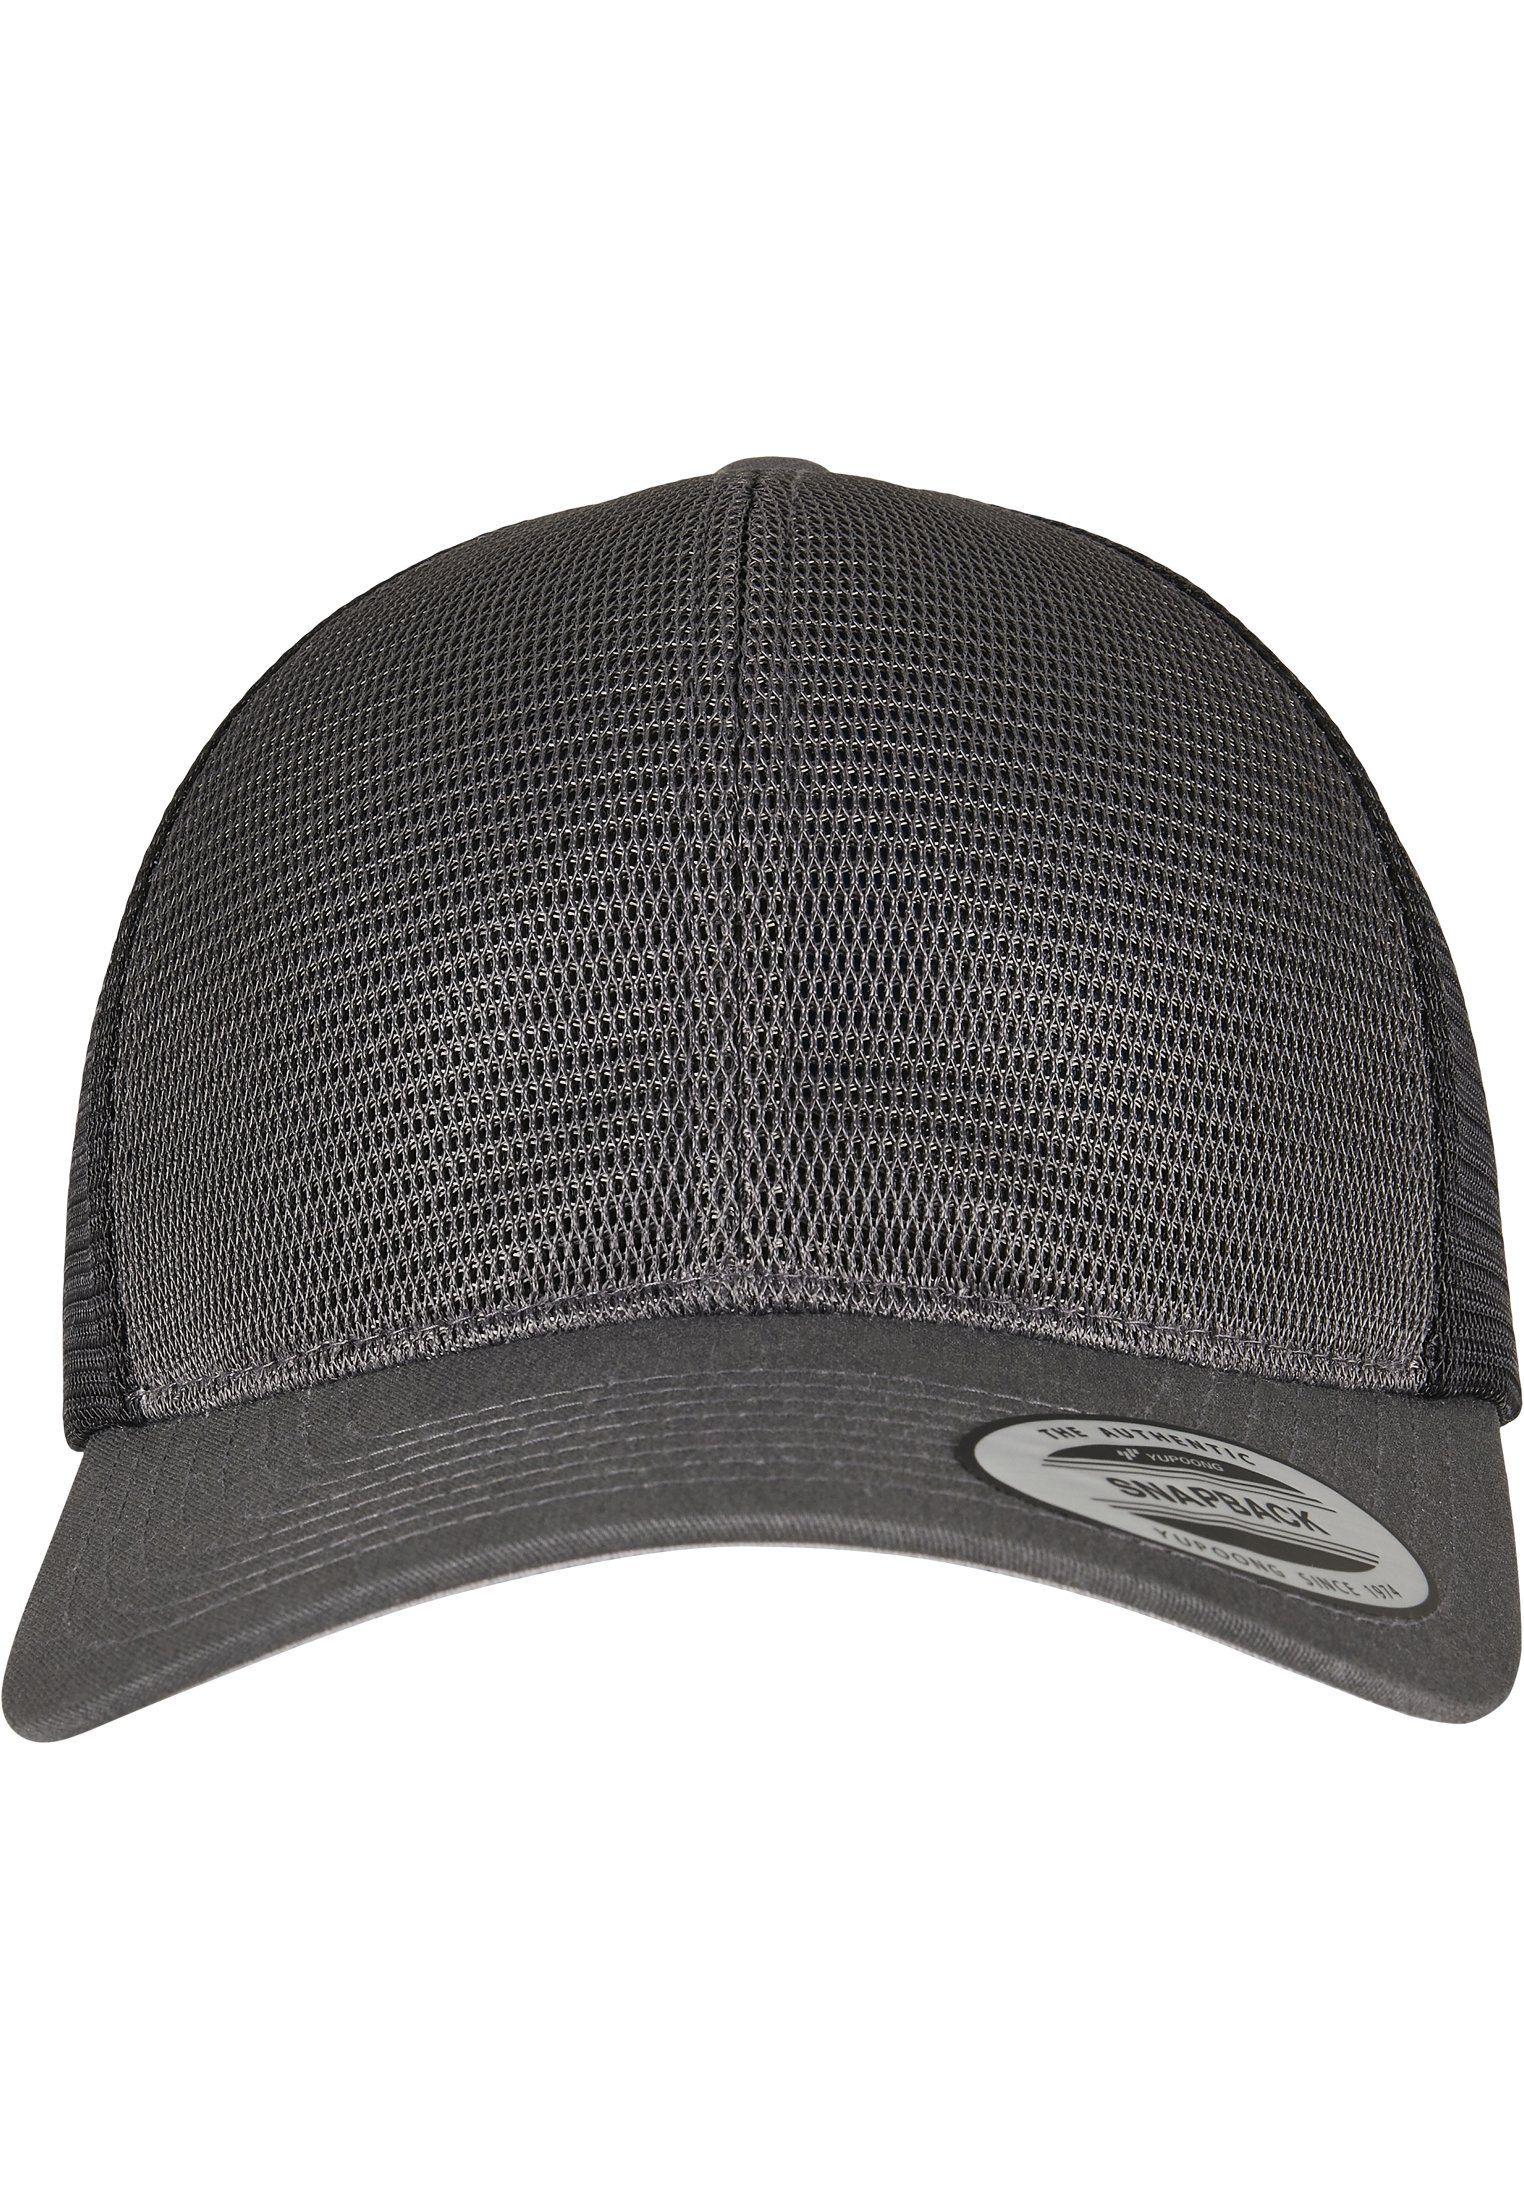 Omnimesh Accessoires 2-Tone Cap Flexfit charcoal/black Cap 360° Flex